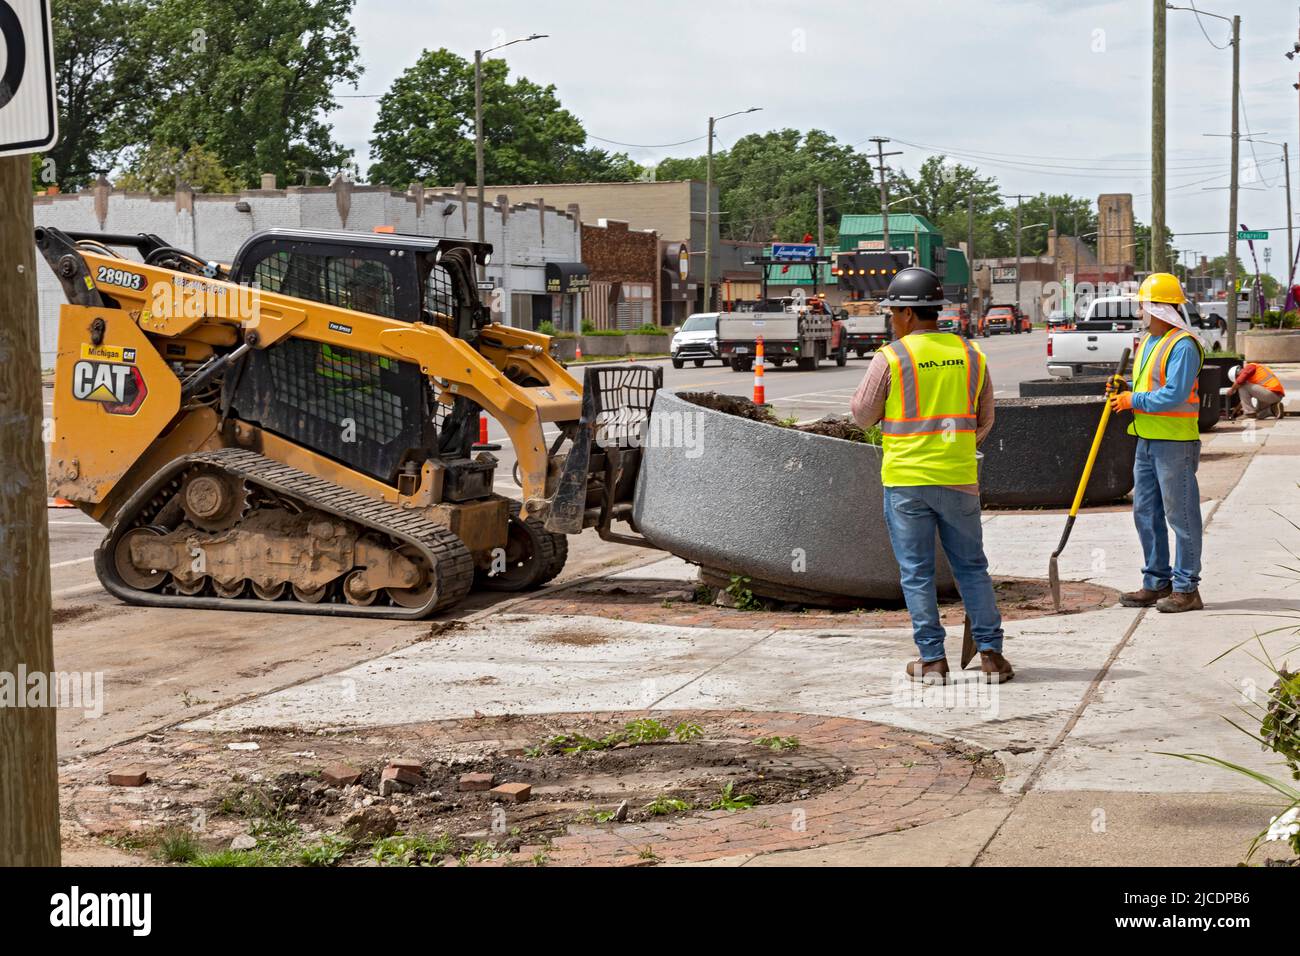 Detroit, Michigan - i lavoratori rimuovono vecchie piantatrici in cemento come parte di un piano per migliorare il paesaggio urbano su East Warren Avenue, dove ci sono molti vuoti Foto Stock